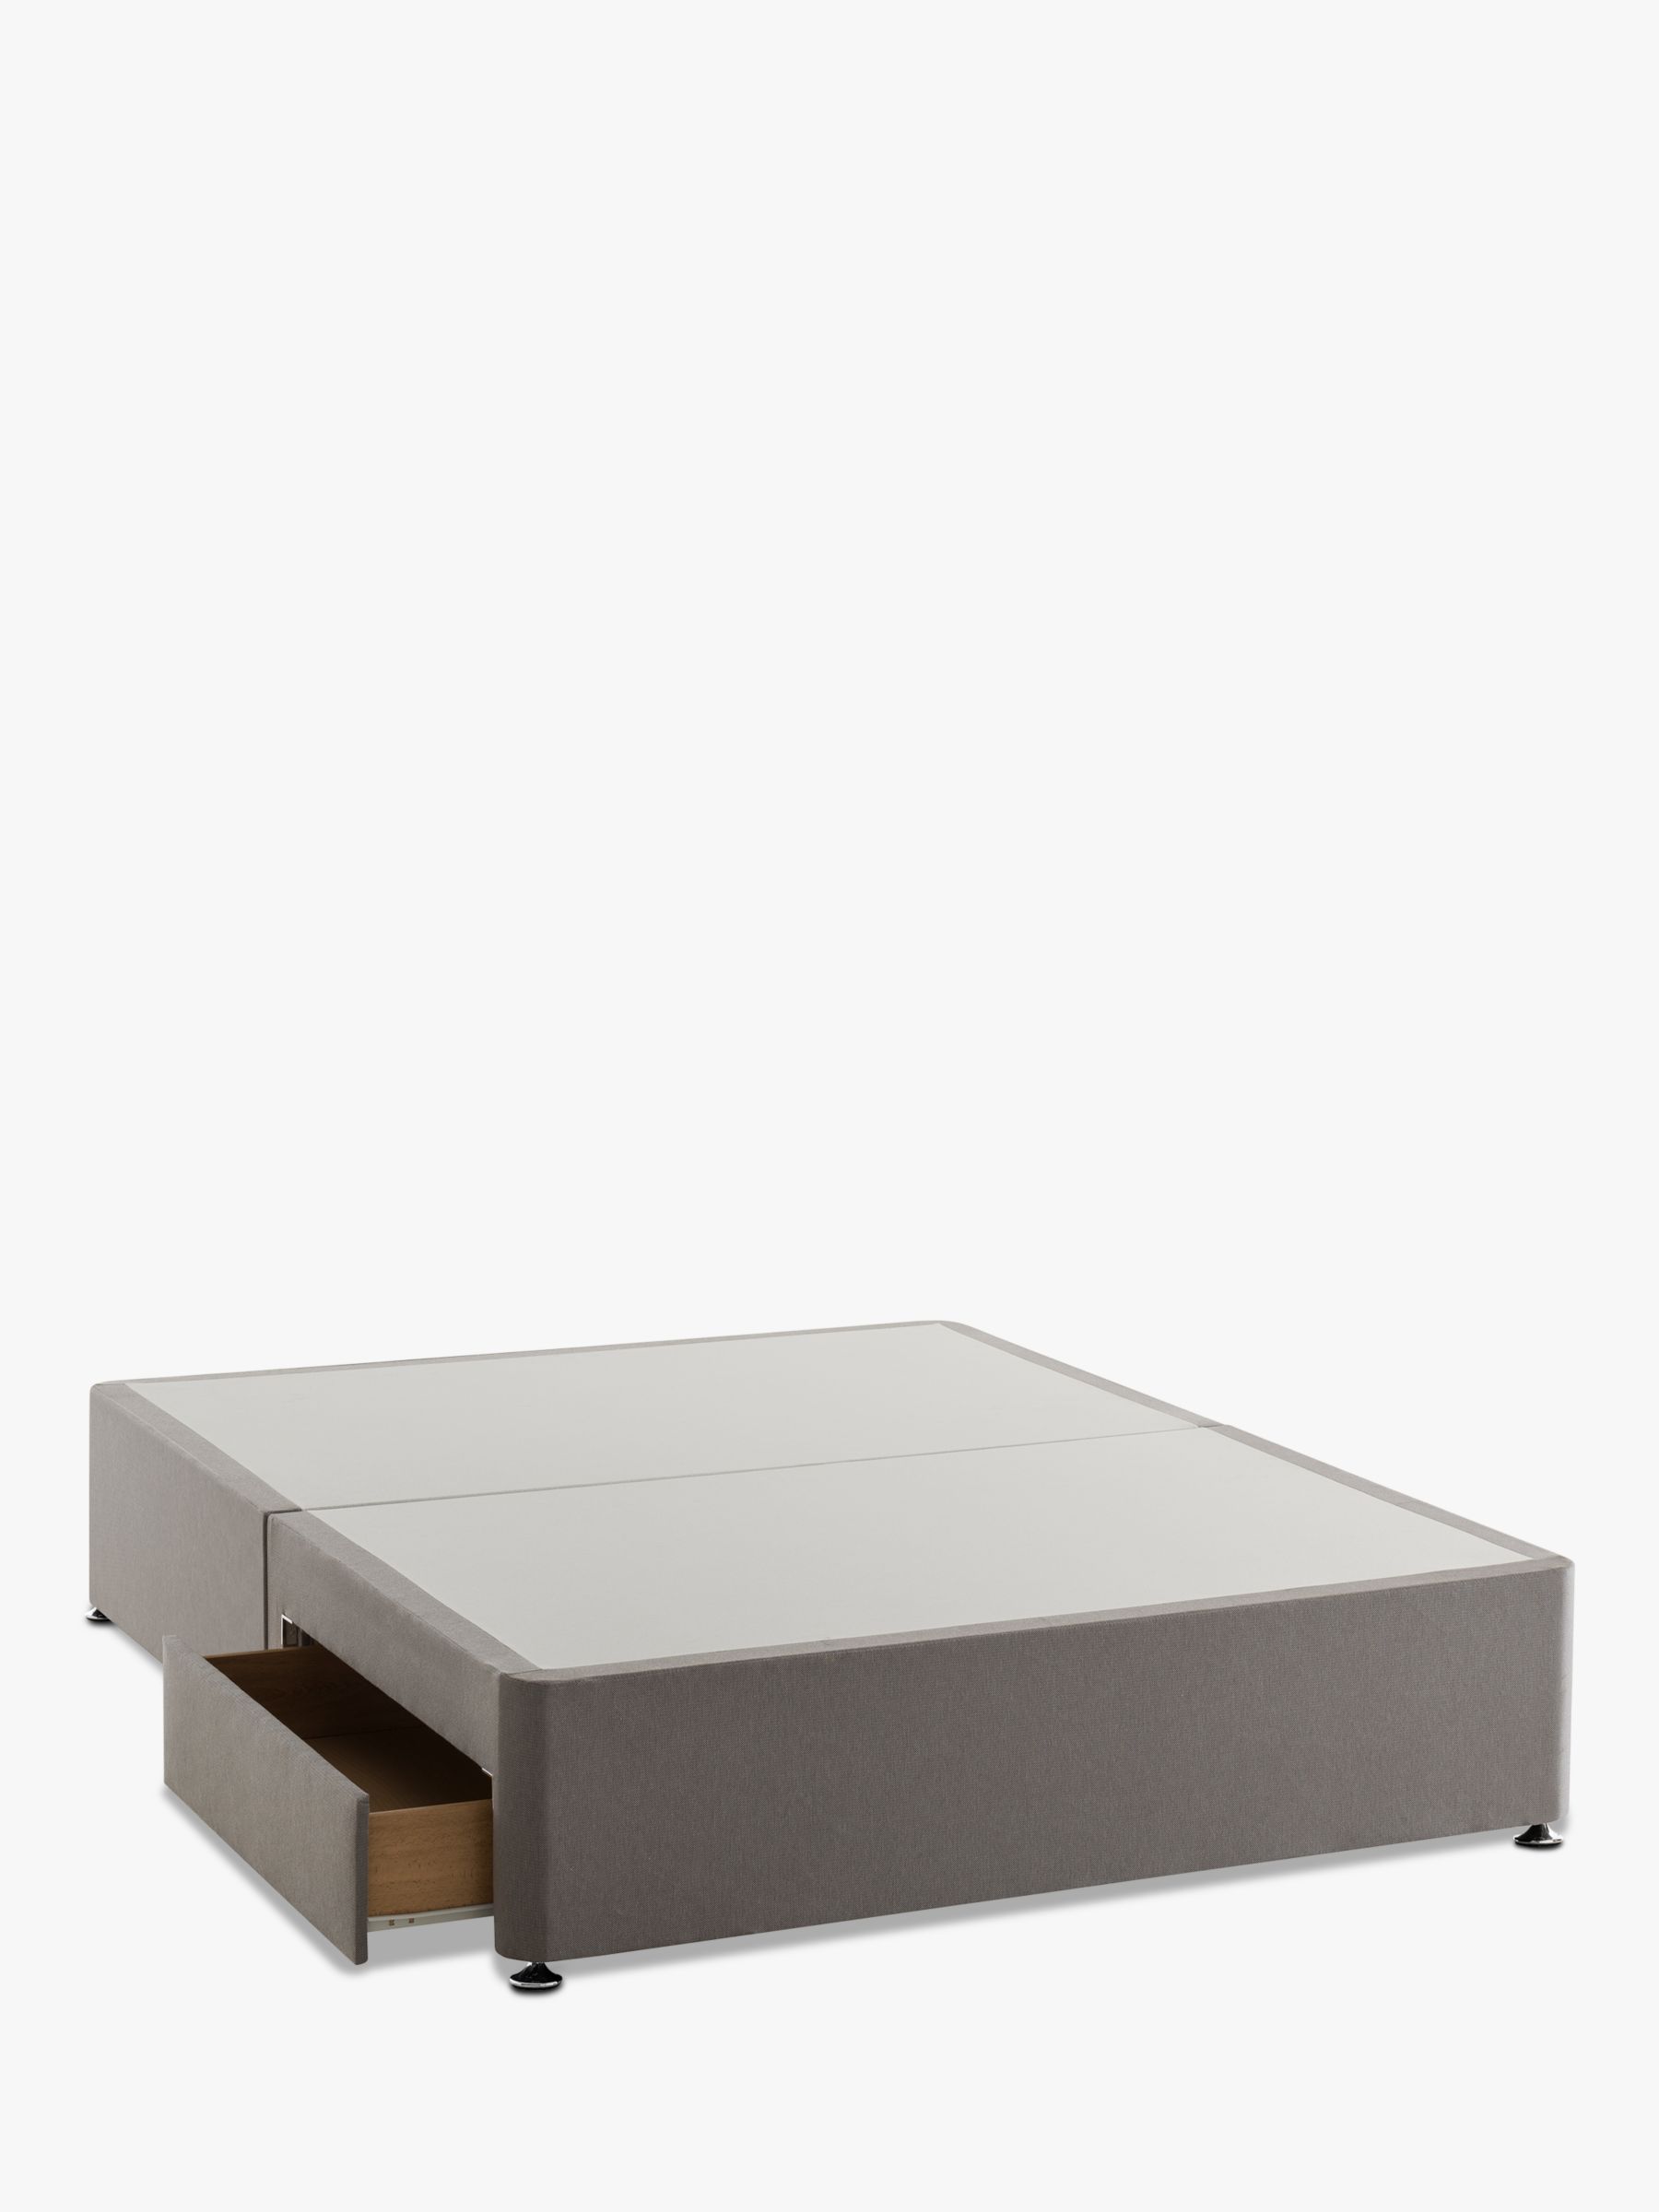 Photo of Silentnight non sprung 2 drawer divan storage bed king size